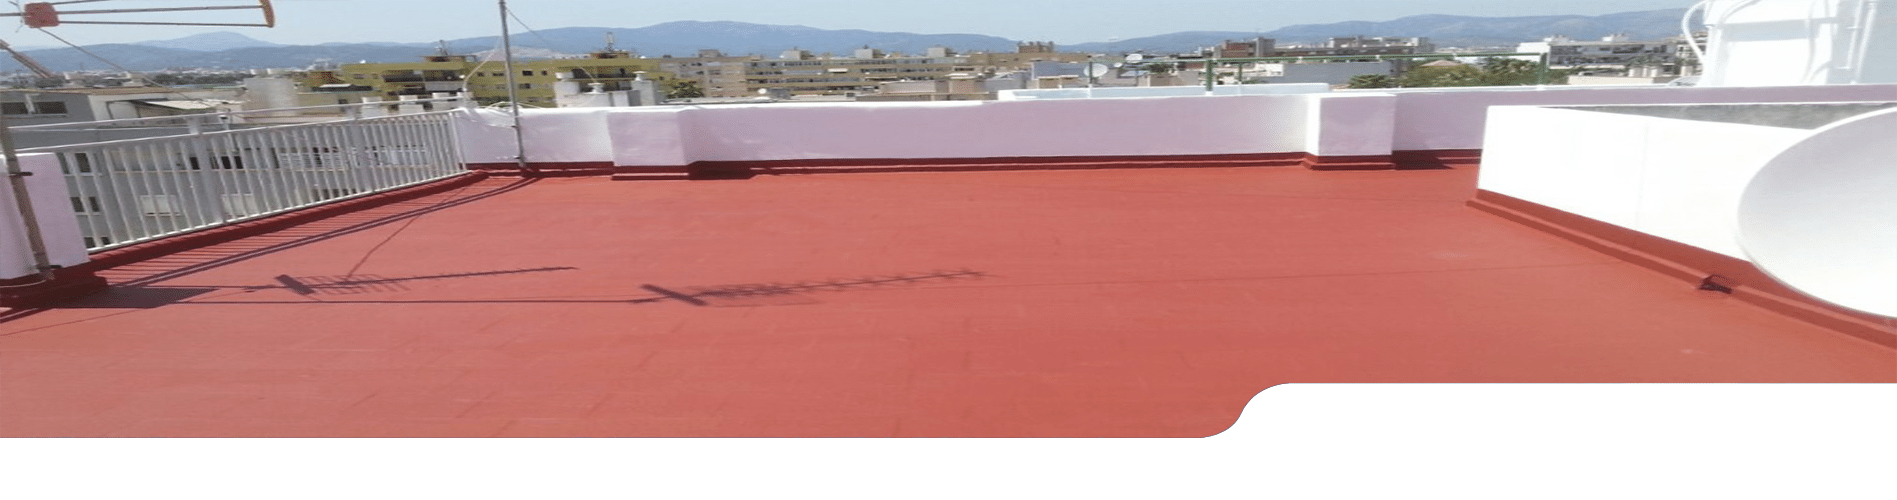 Impermeabilizaciones de terrazas en Madrid. Servicios de pintura e impermeabilización de terrazas.